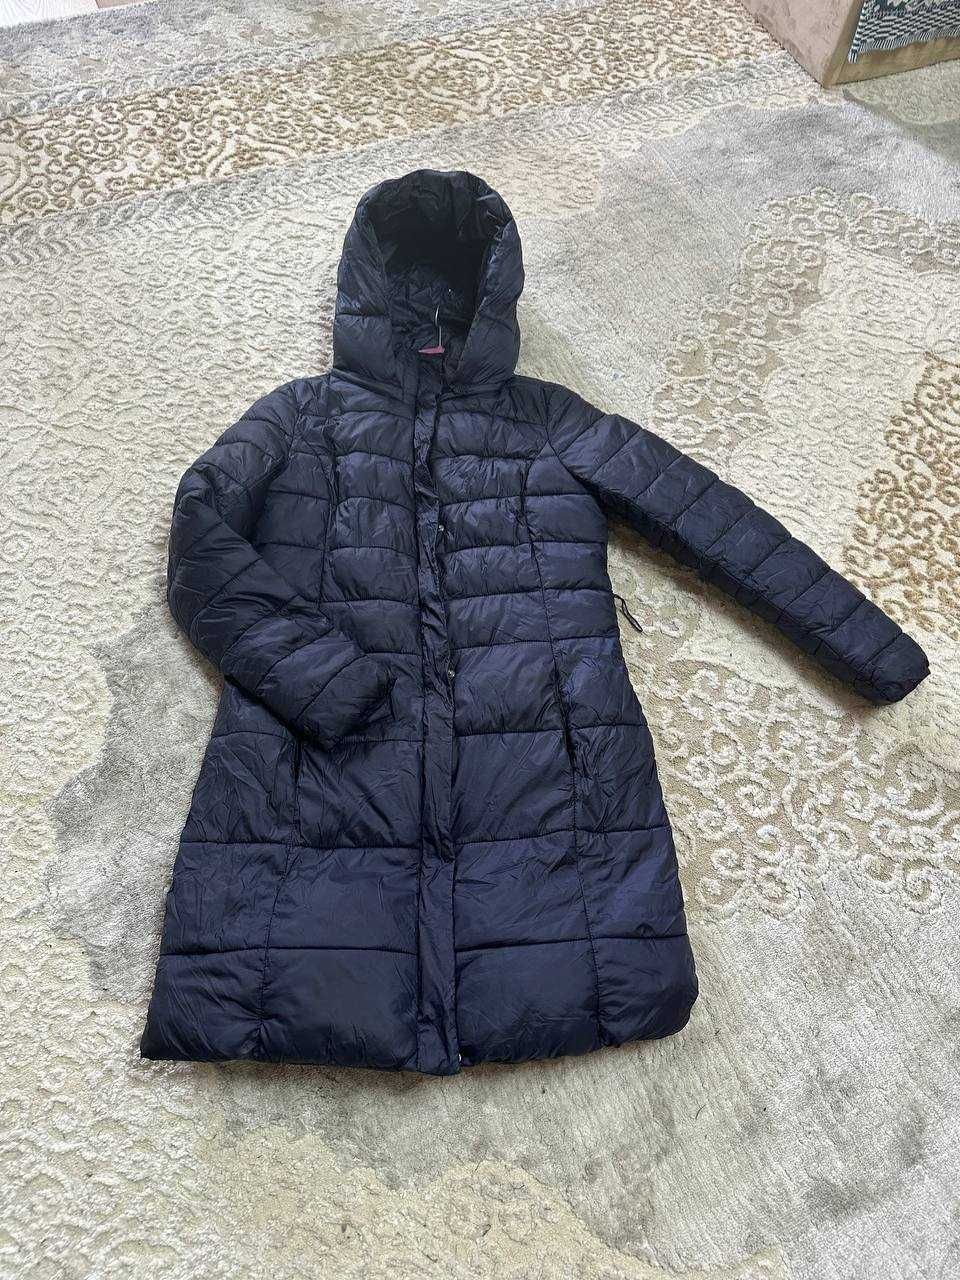 Зимние вещи, куртка, пальто, куртка с мехом, накидка